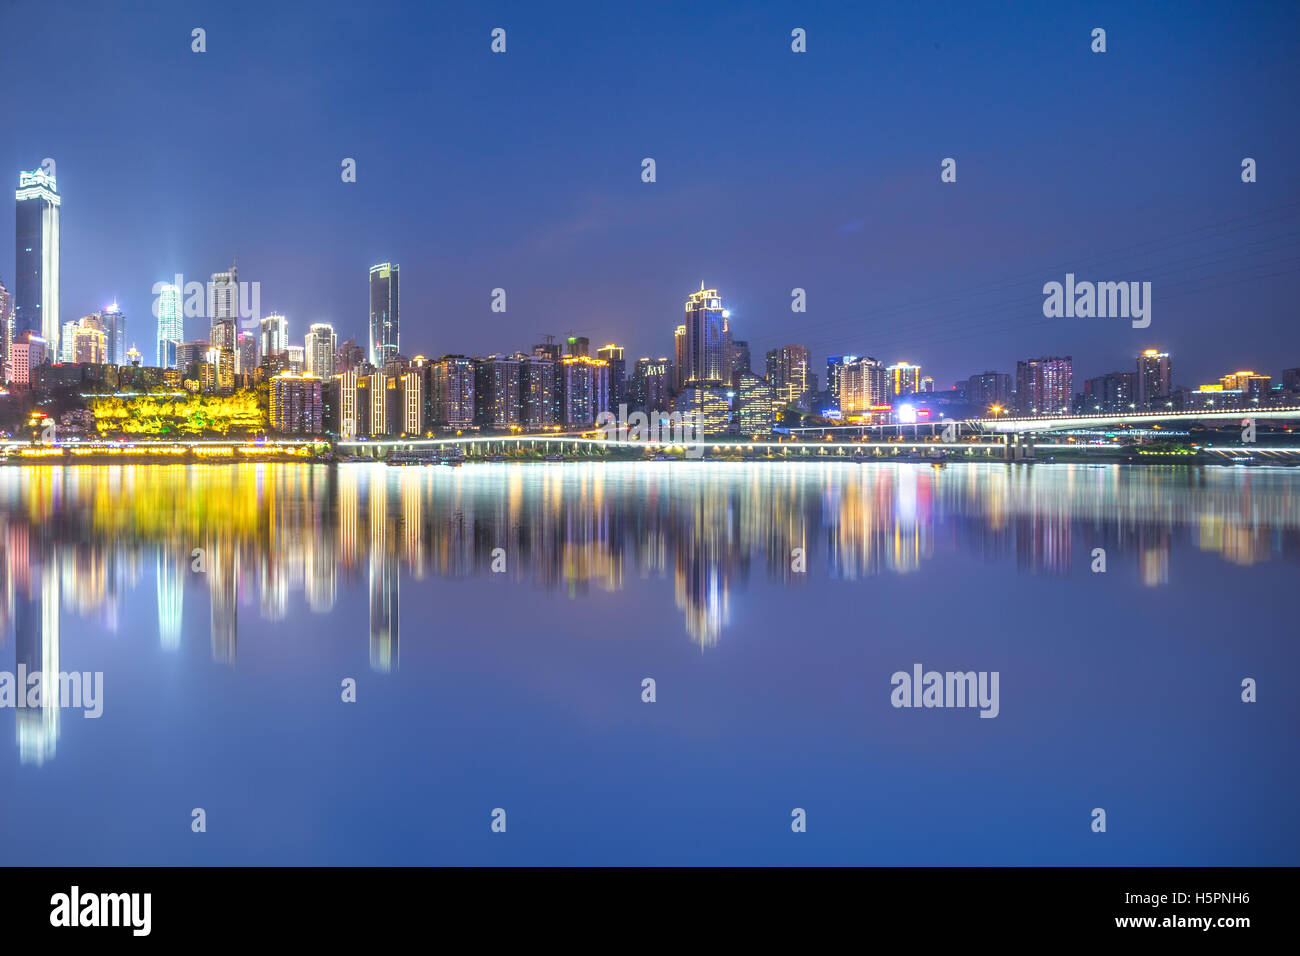 night scene of chongqing from water Stock Photo